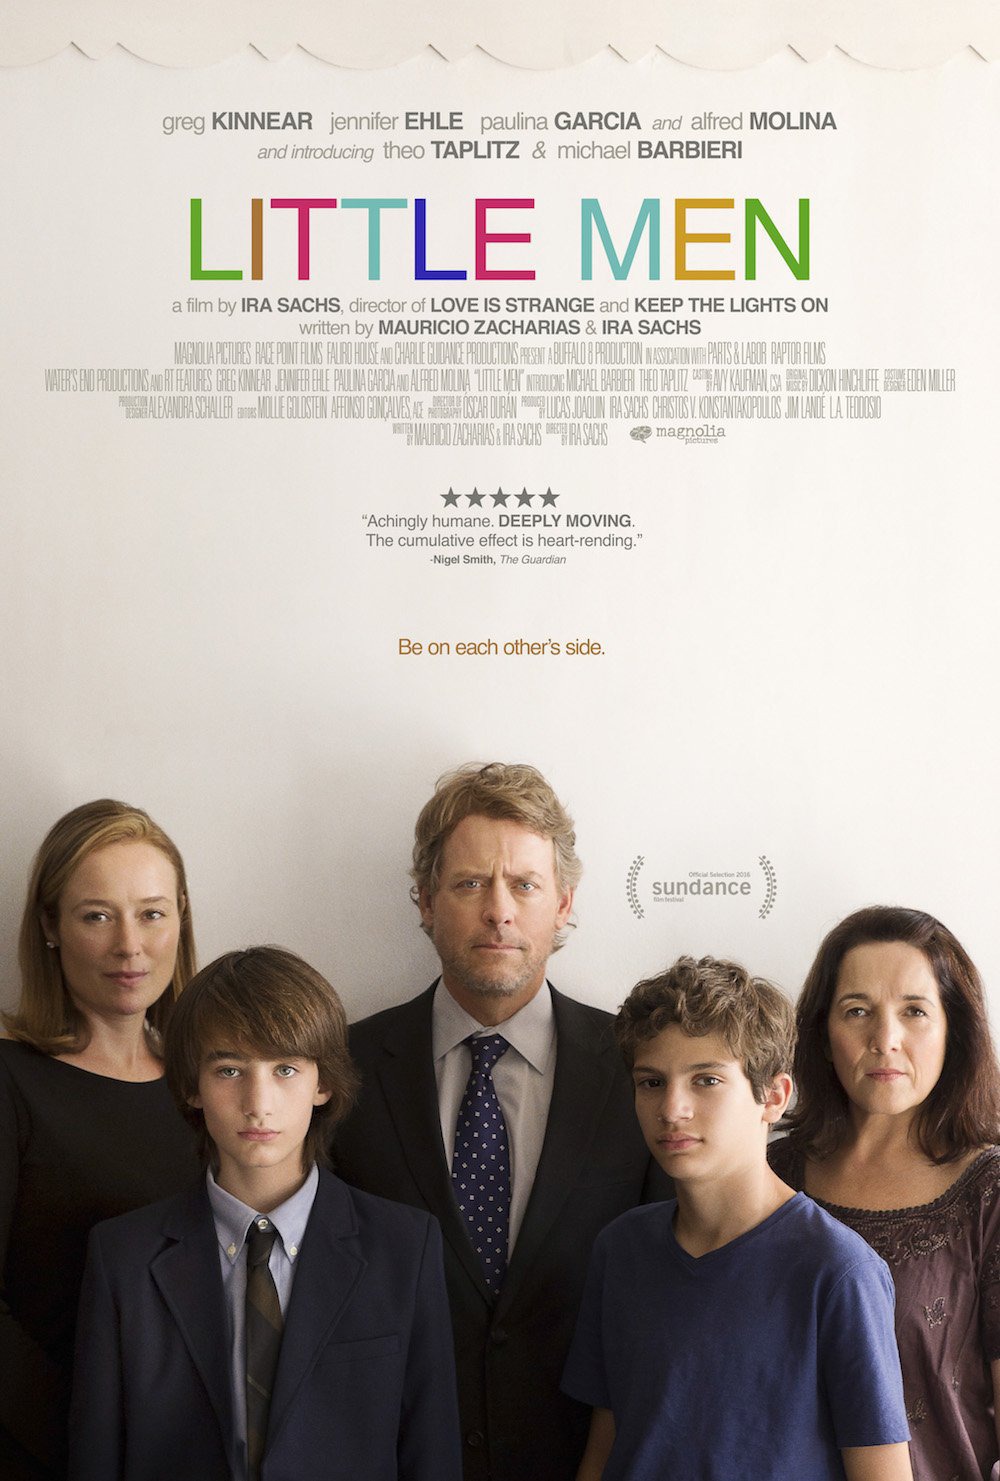 Nonton film Little Men layarkaca21 indoxx1 ganool online streaming terbaru